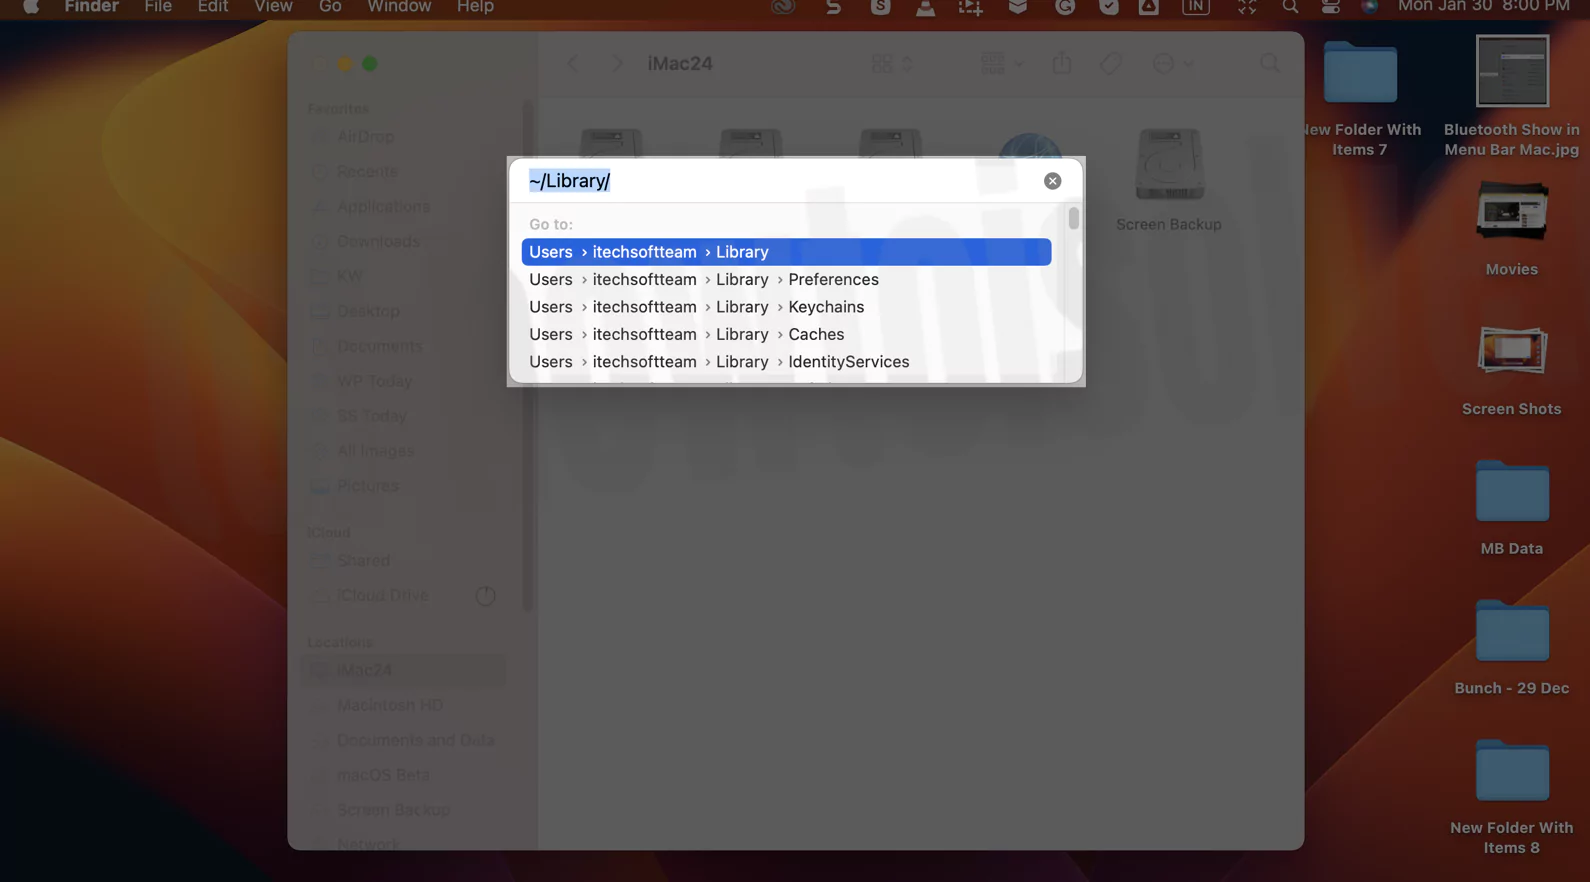 open-library-folder-in-finder-mac